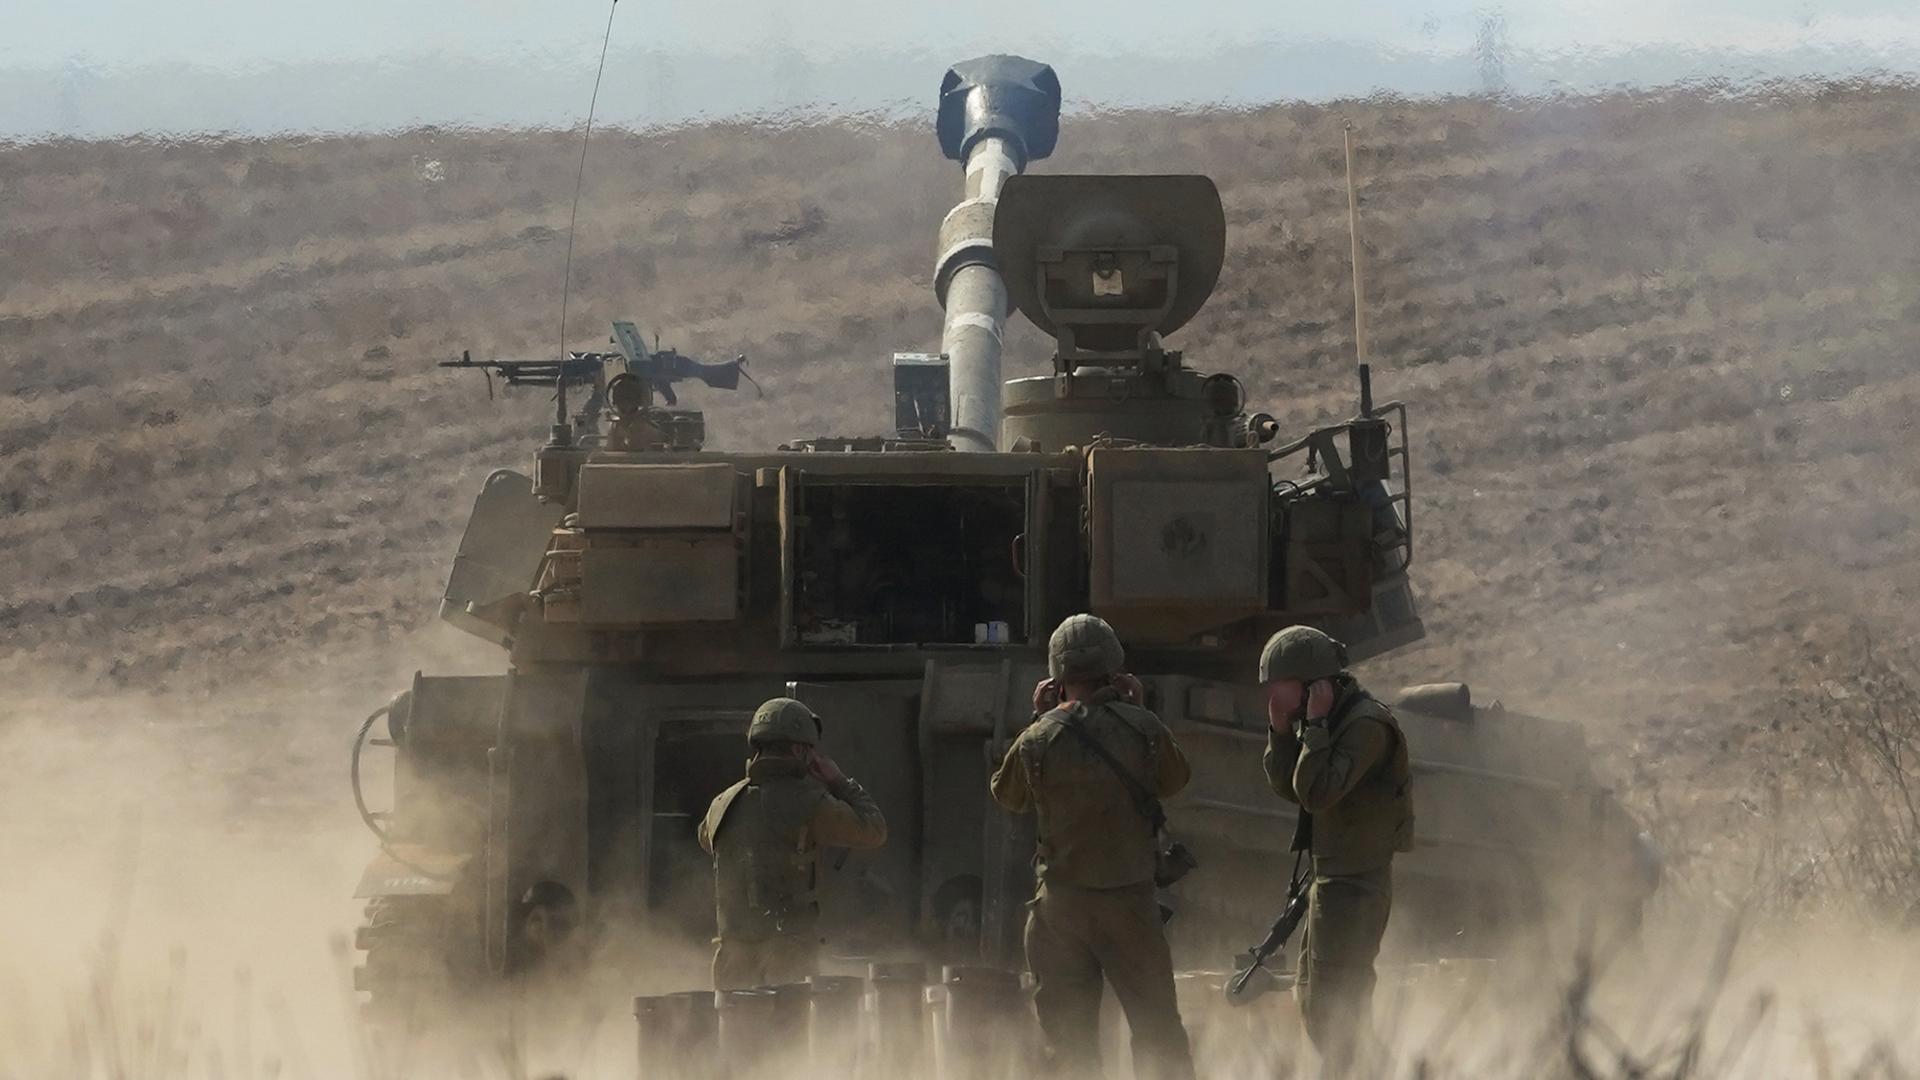 Das Israelische Militär bereitet sich offenbar auf eine Bodenoffensive vor. Vier Soldaten stehen vor einem Panzer. Darüber die Schrift: "Was plant Israels Militär?"